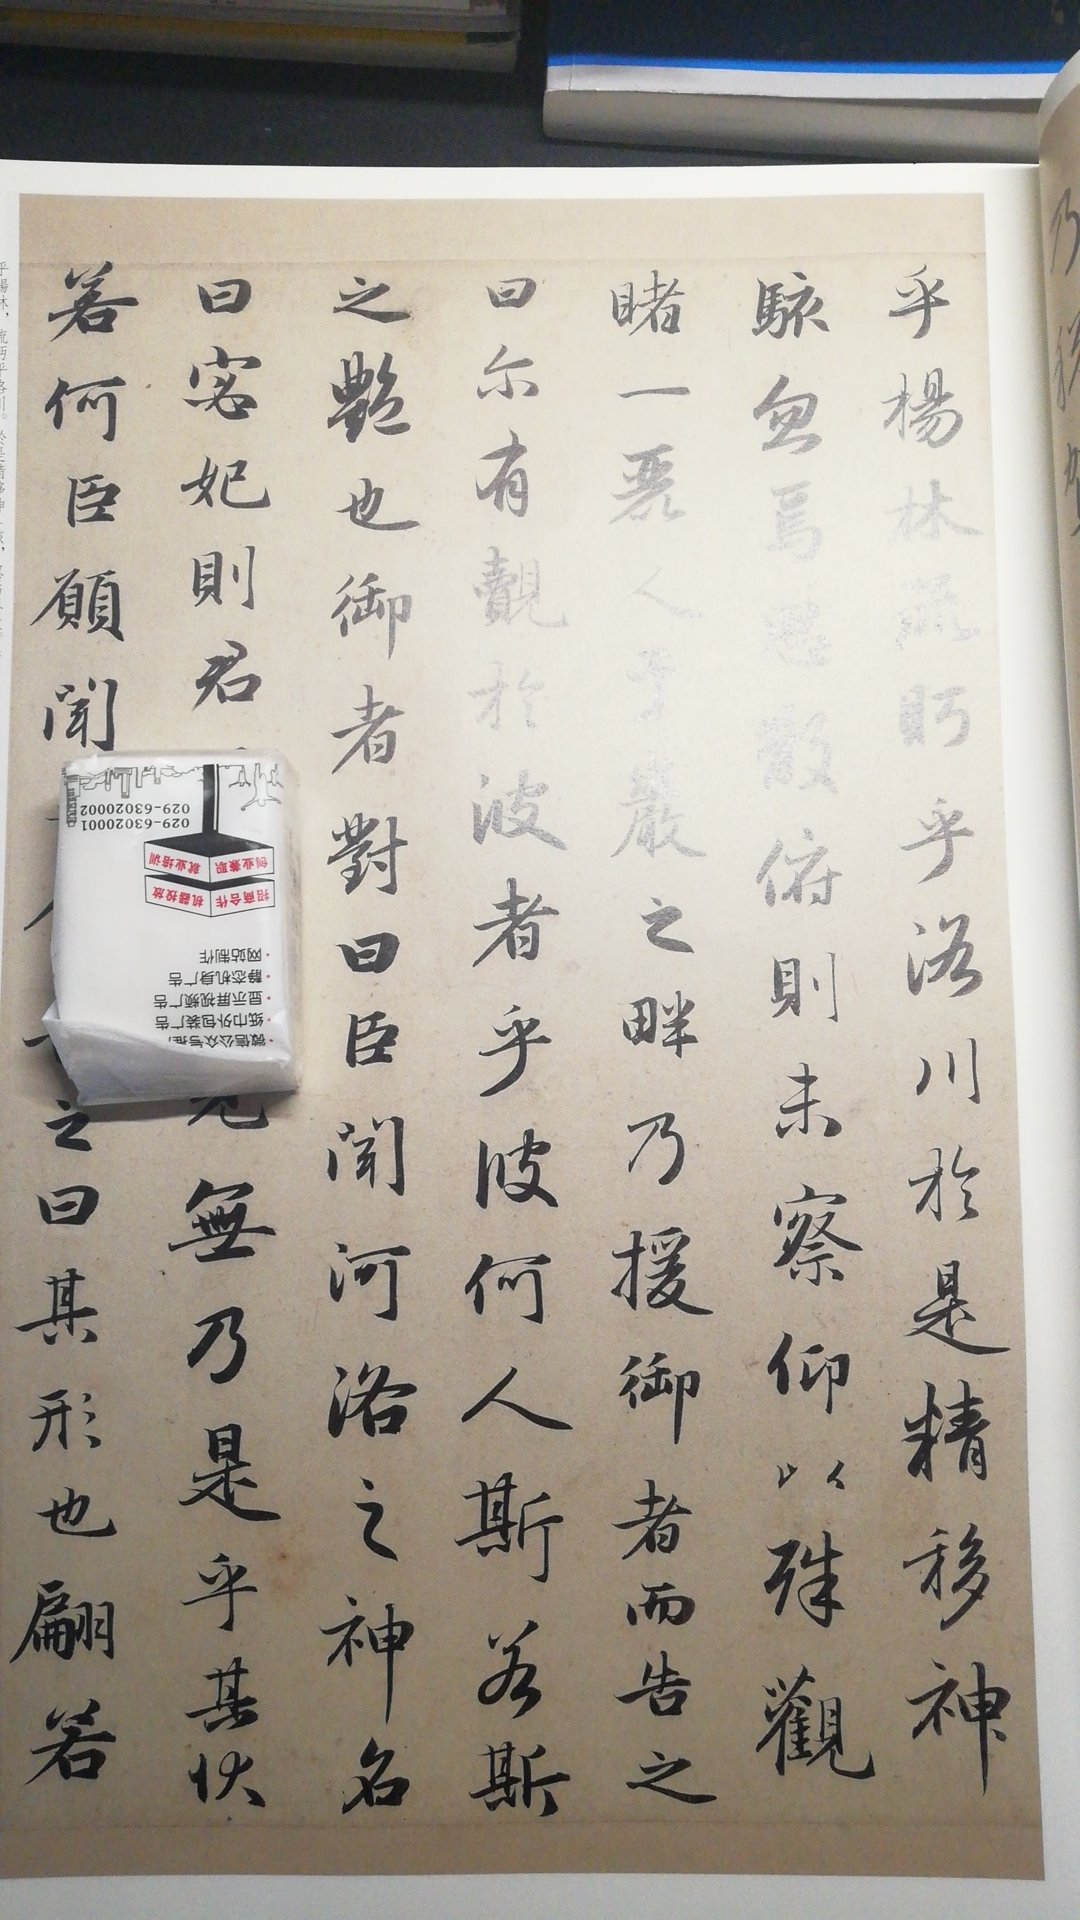 字体大小刚合适，不愧是中华书局的书。印刷也很棒！。。。。。。